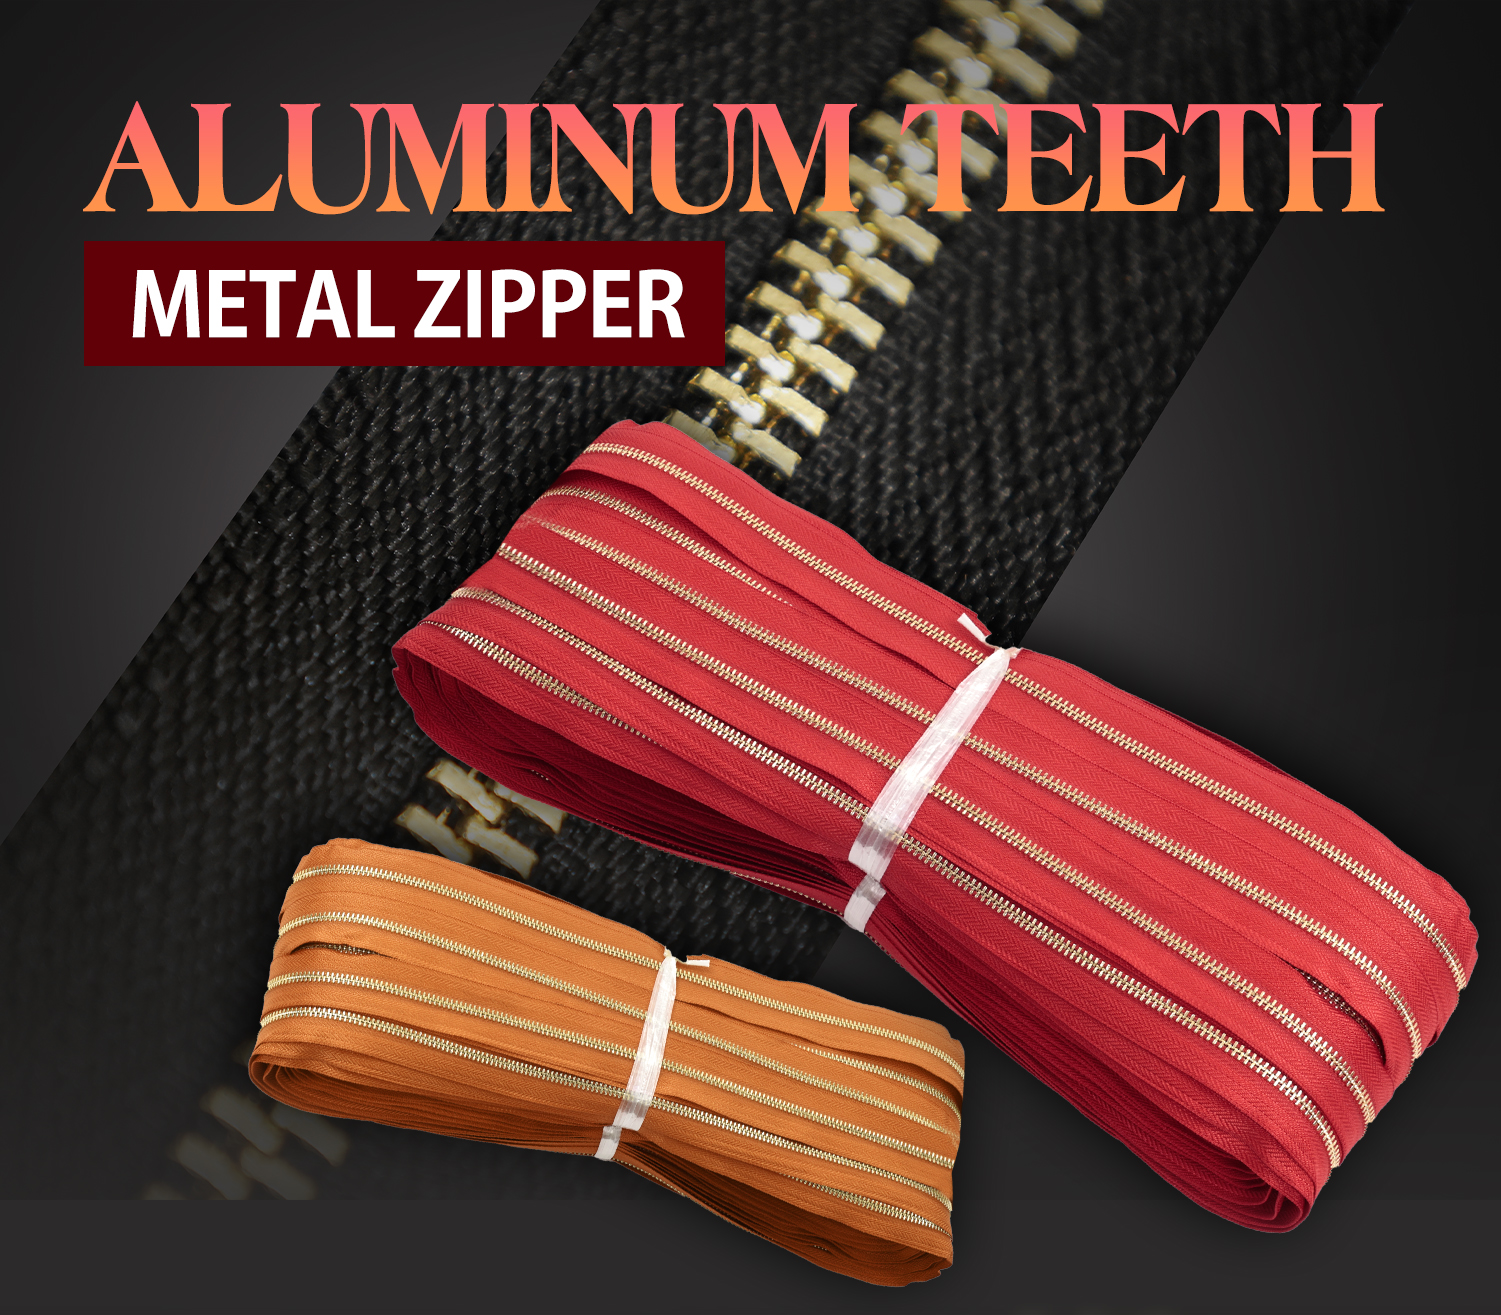 aluminum teeth metal zipper